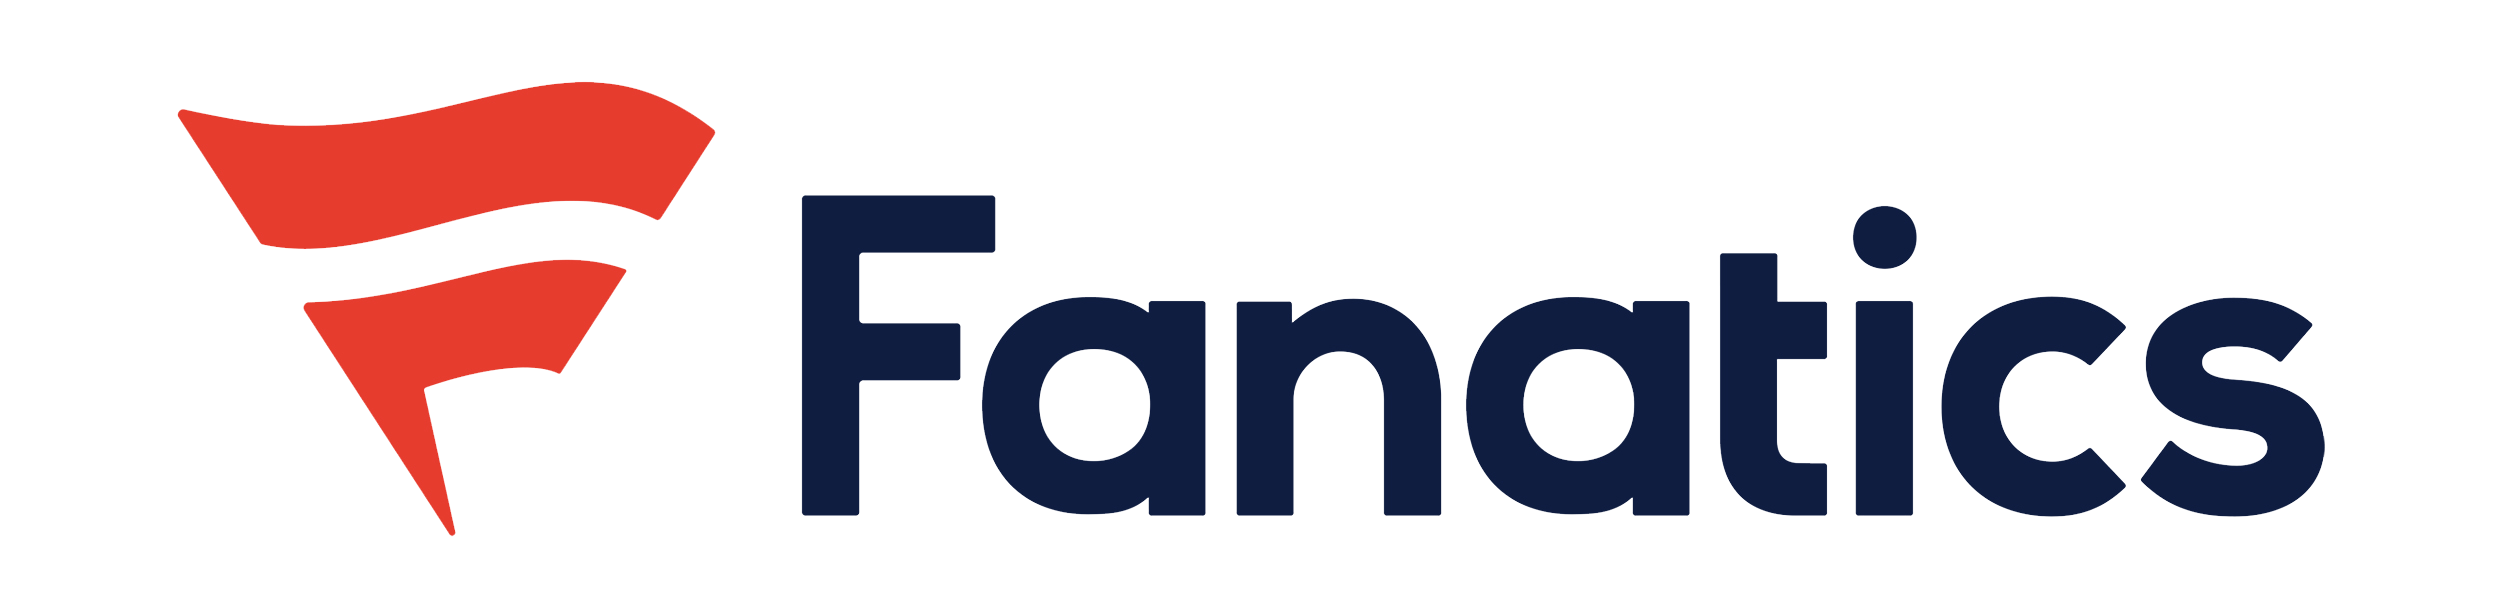 new-fanatics-logo